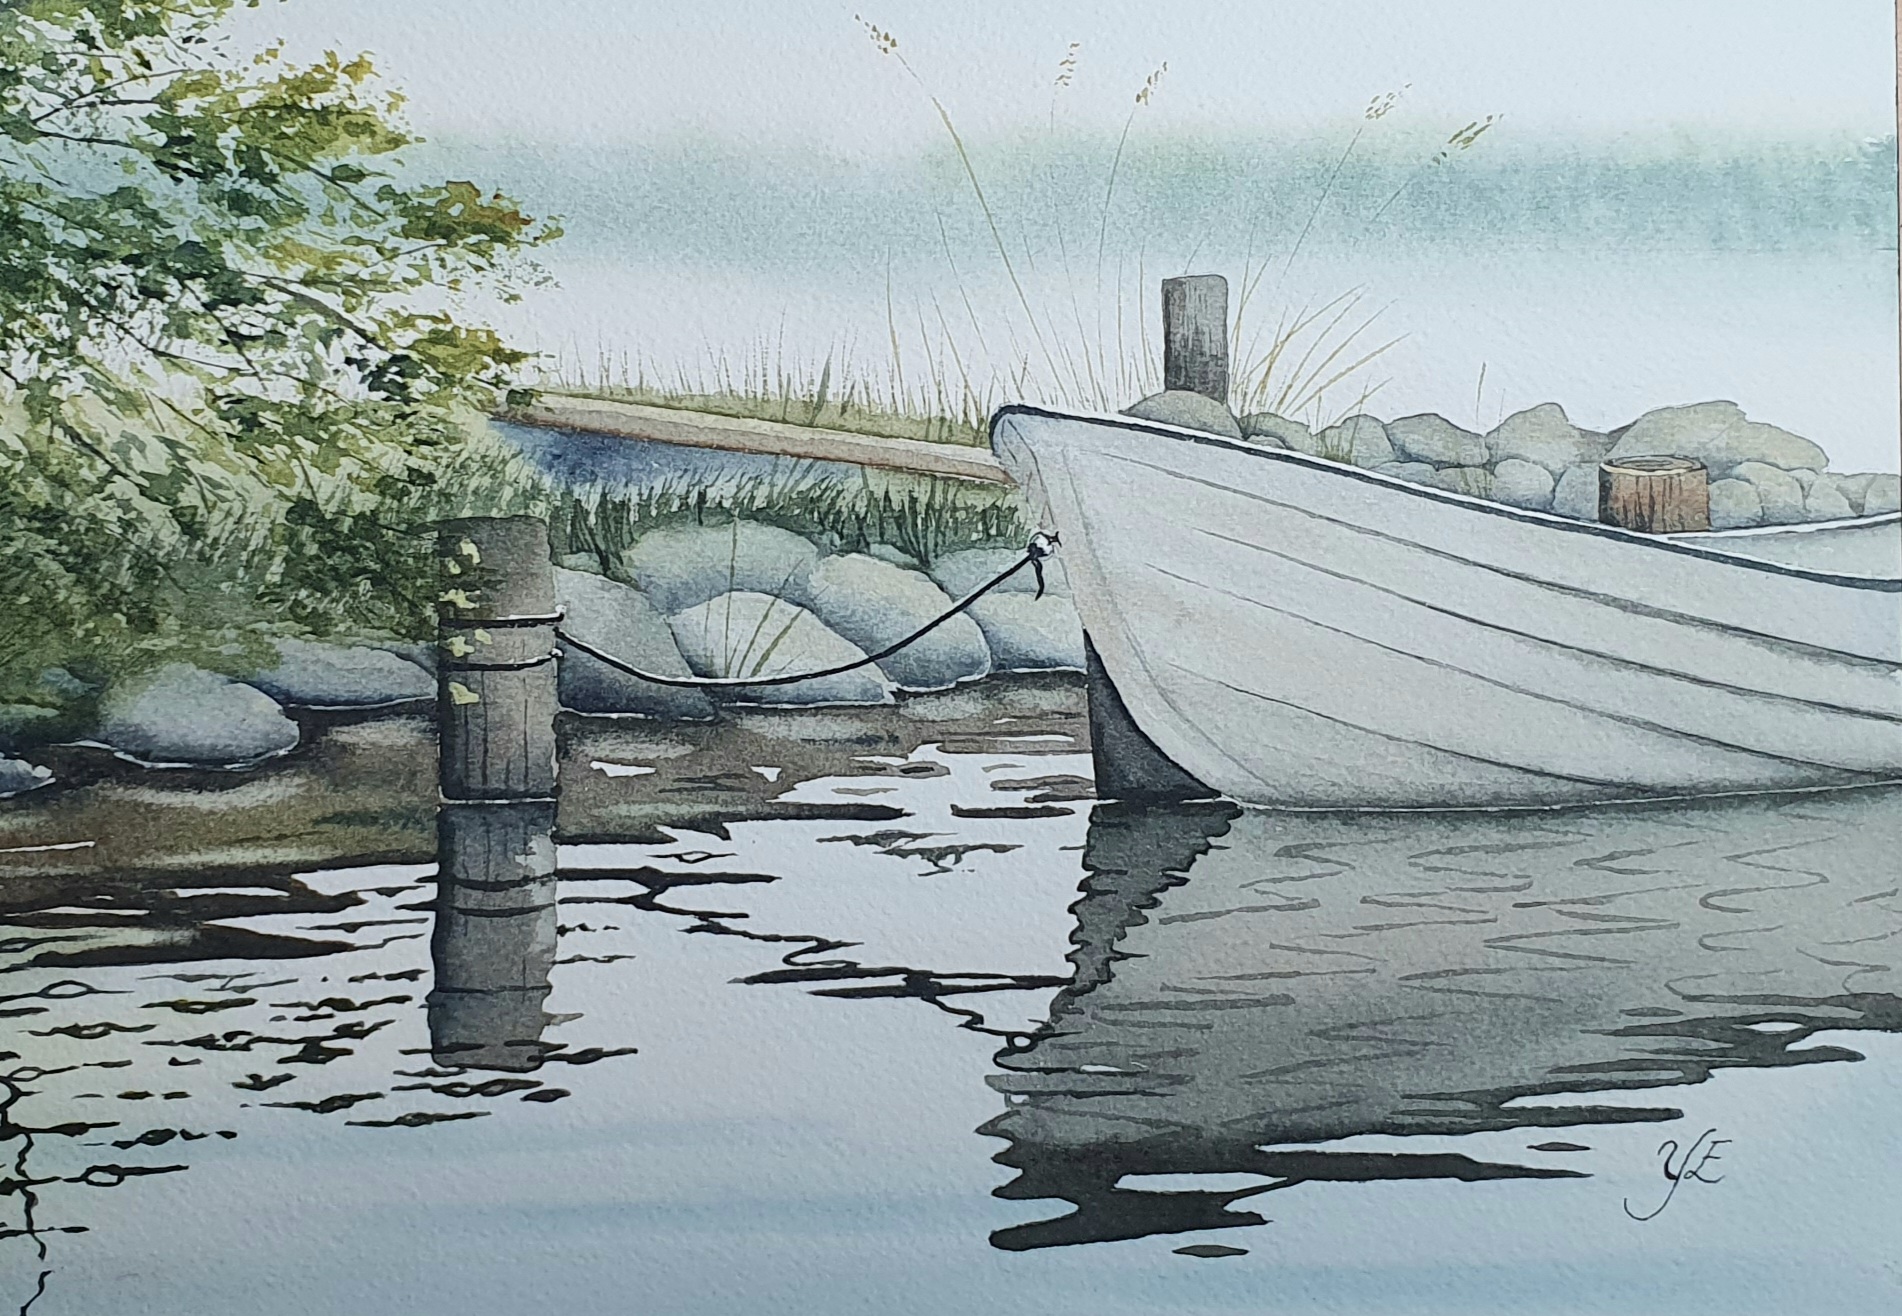 Båt med speglingar - Orginalmålning i akvarell